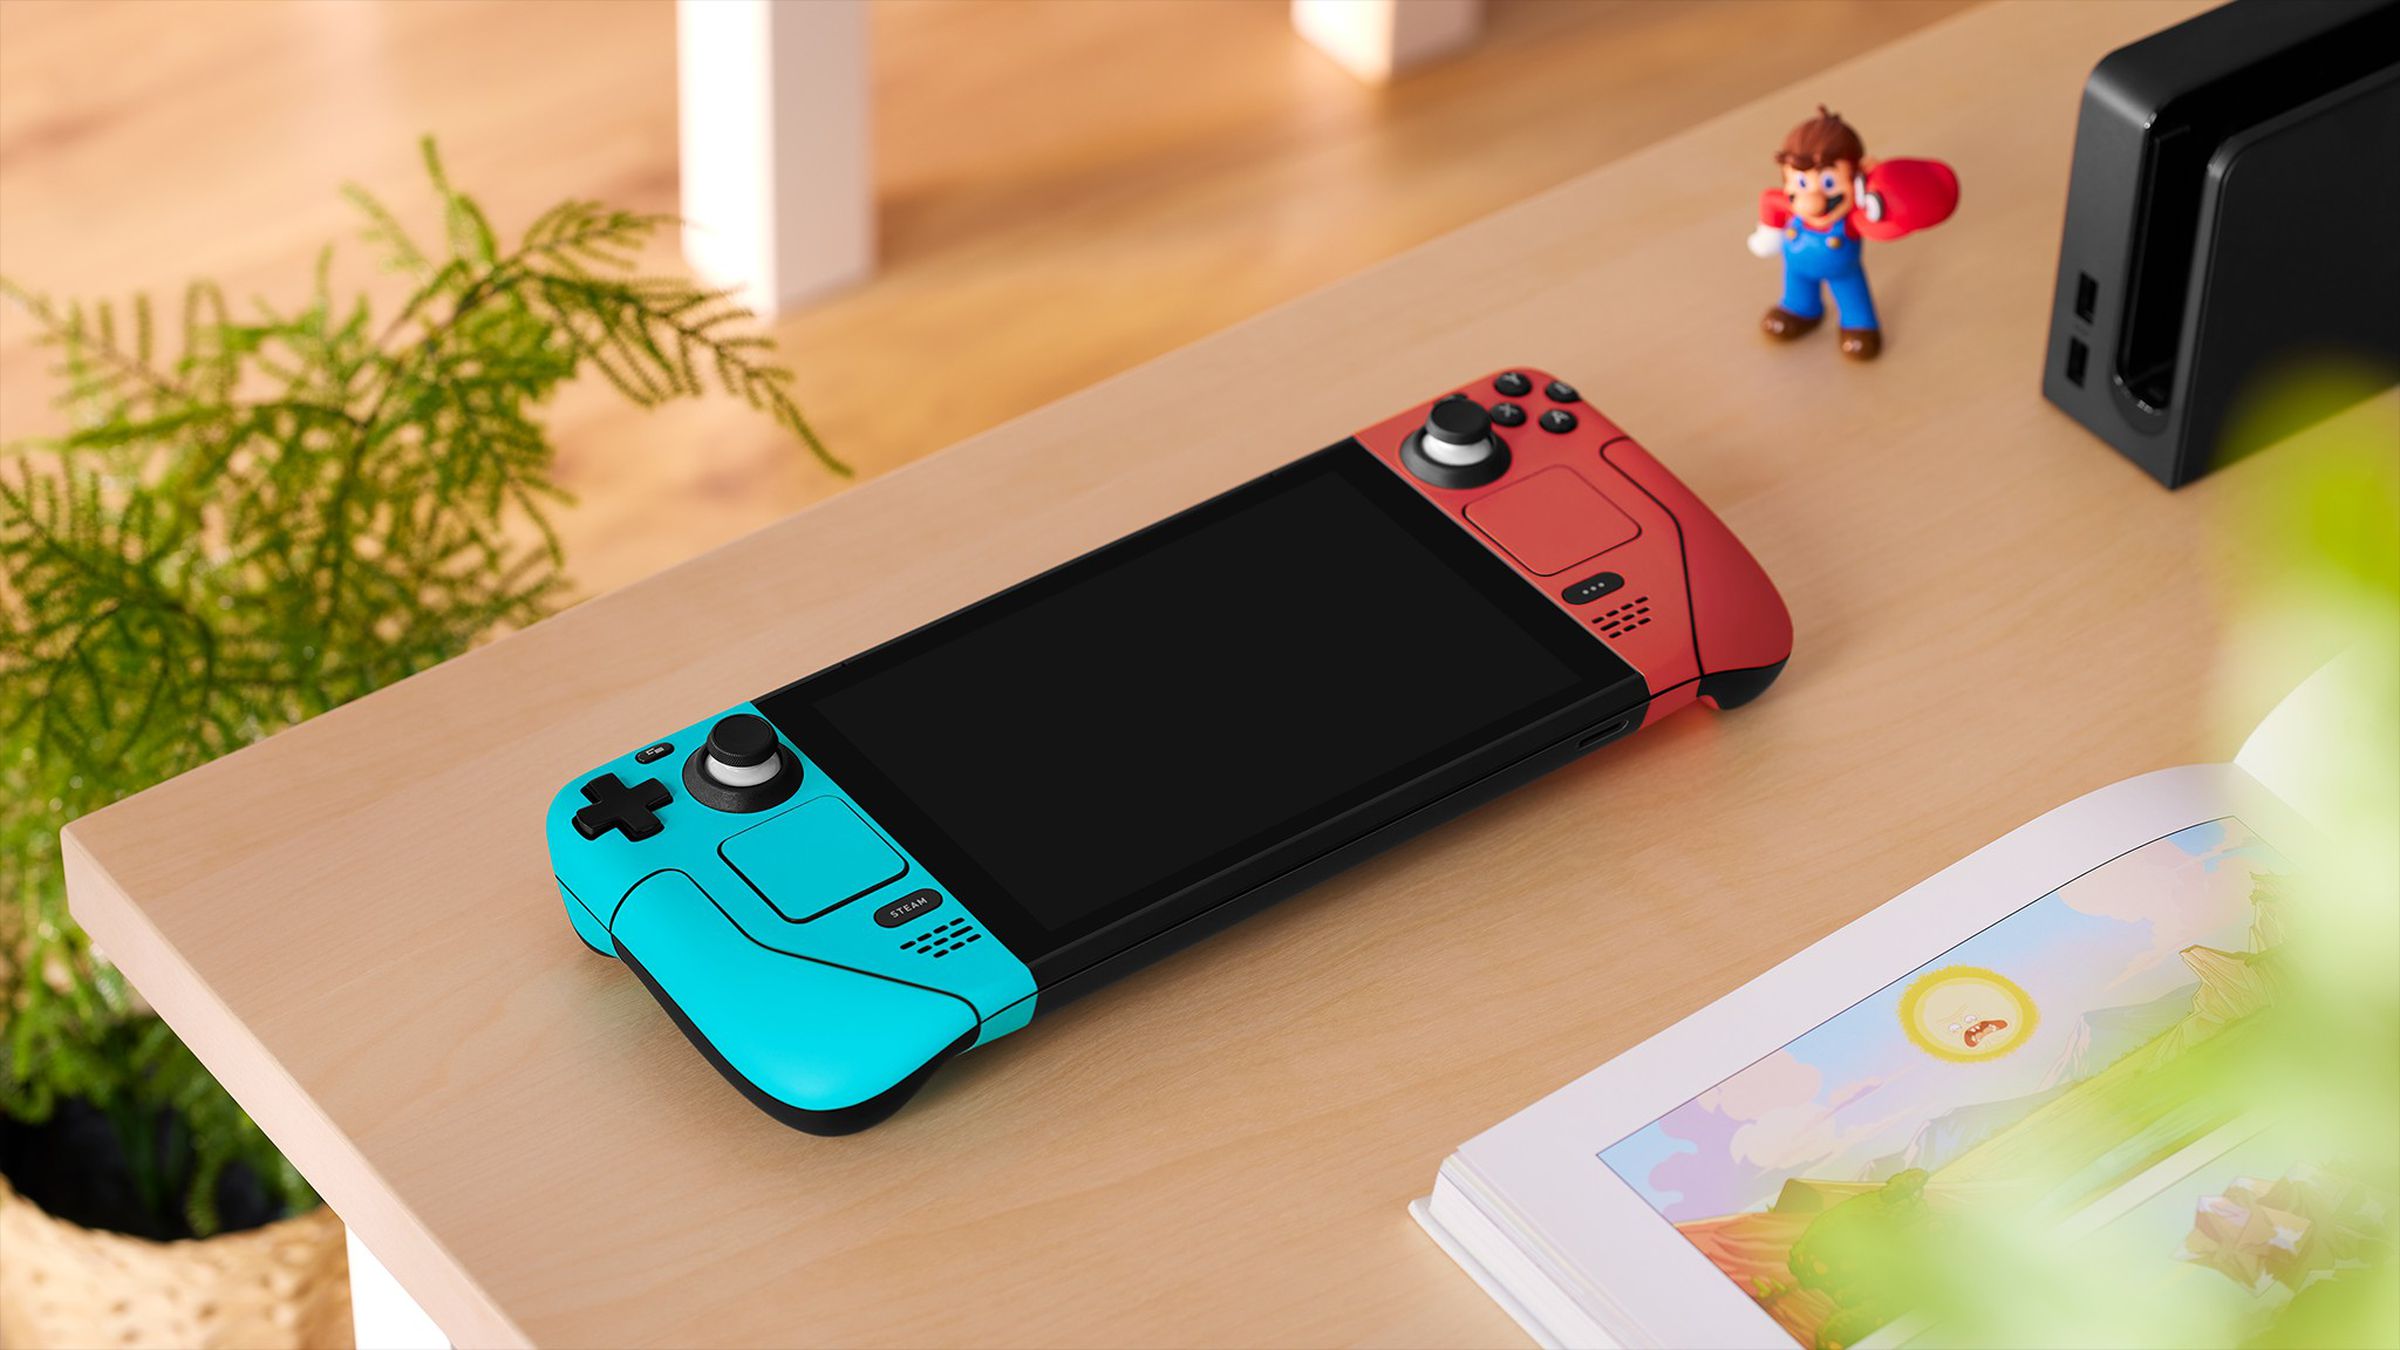 دستگیره های قرمز و آبی یادآور Portal... یا یک پیکربندی خاص از Nintendo Switch هستند.